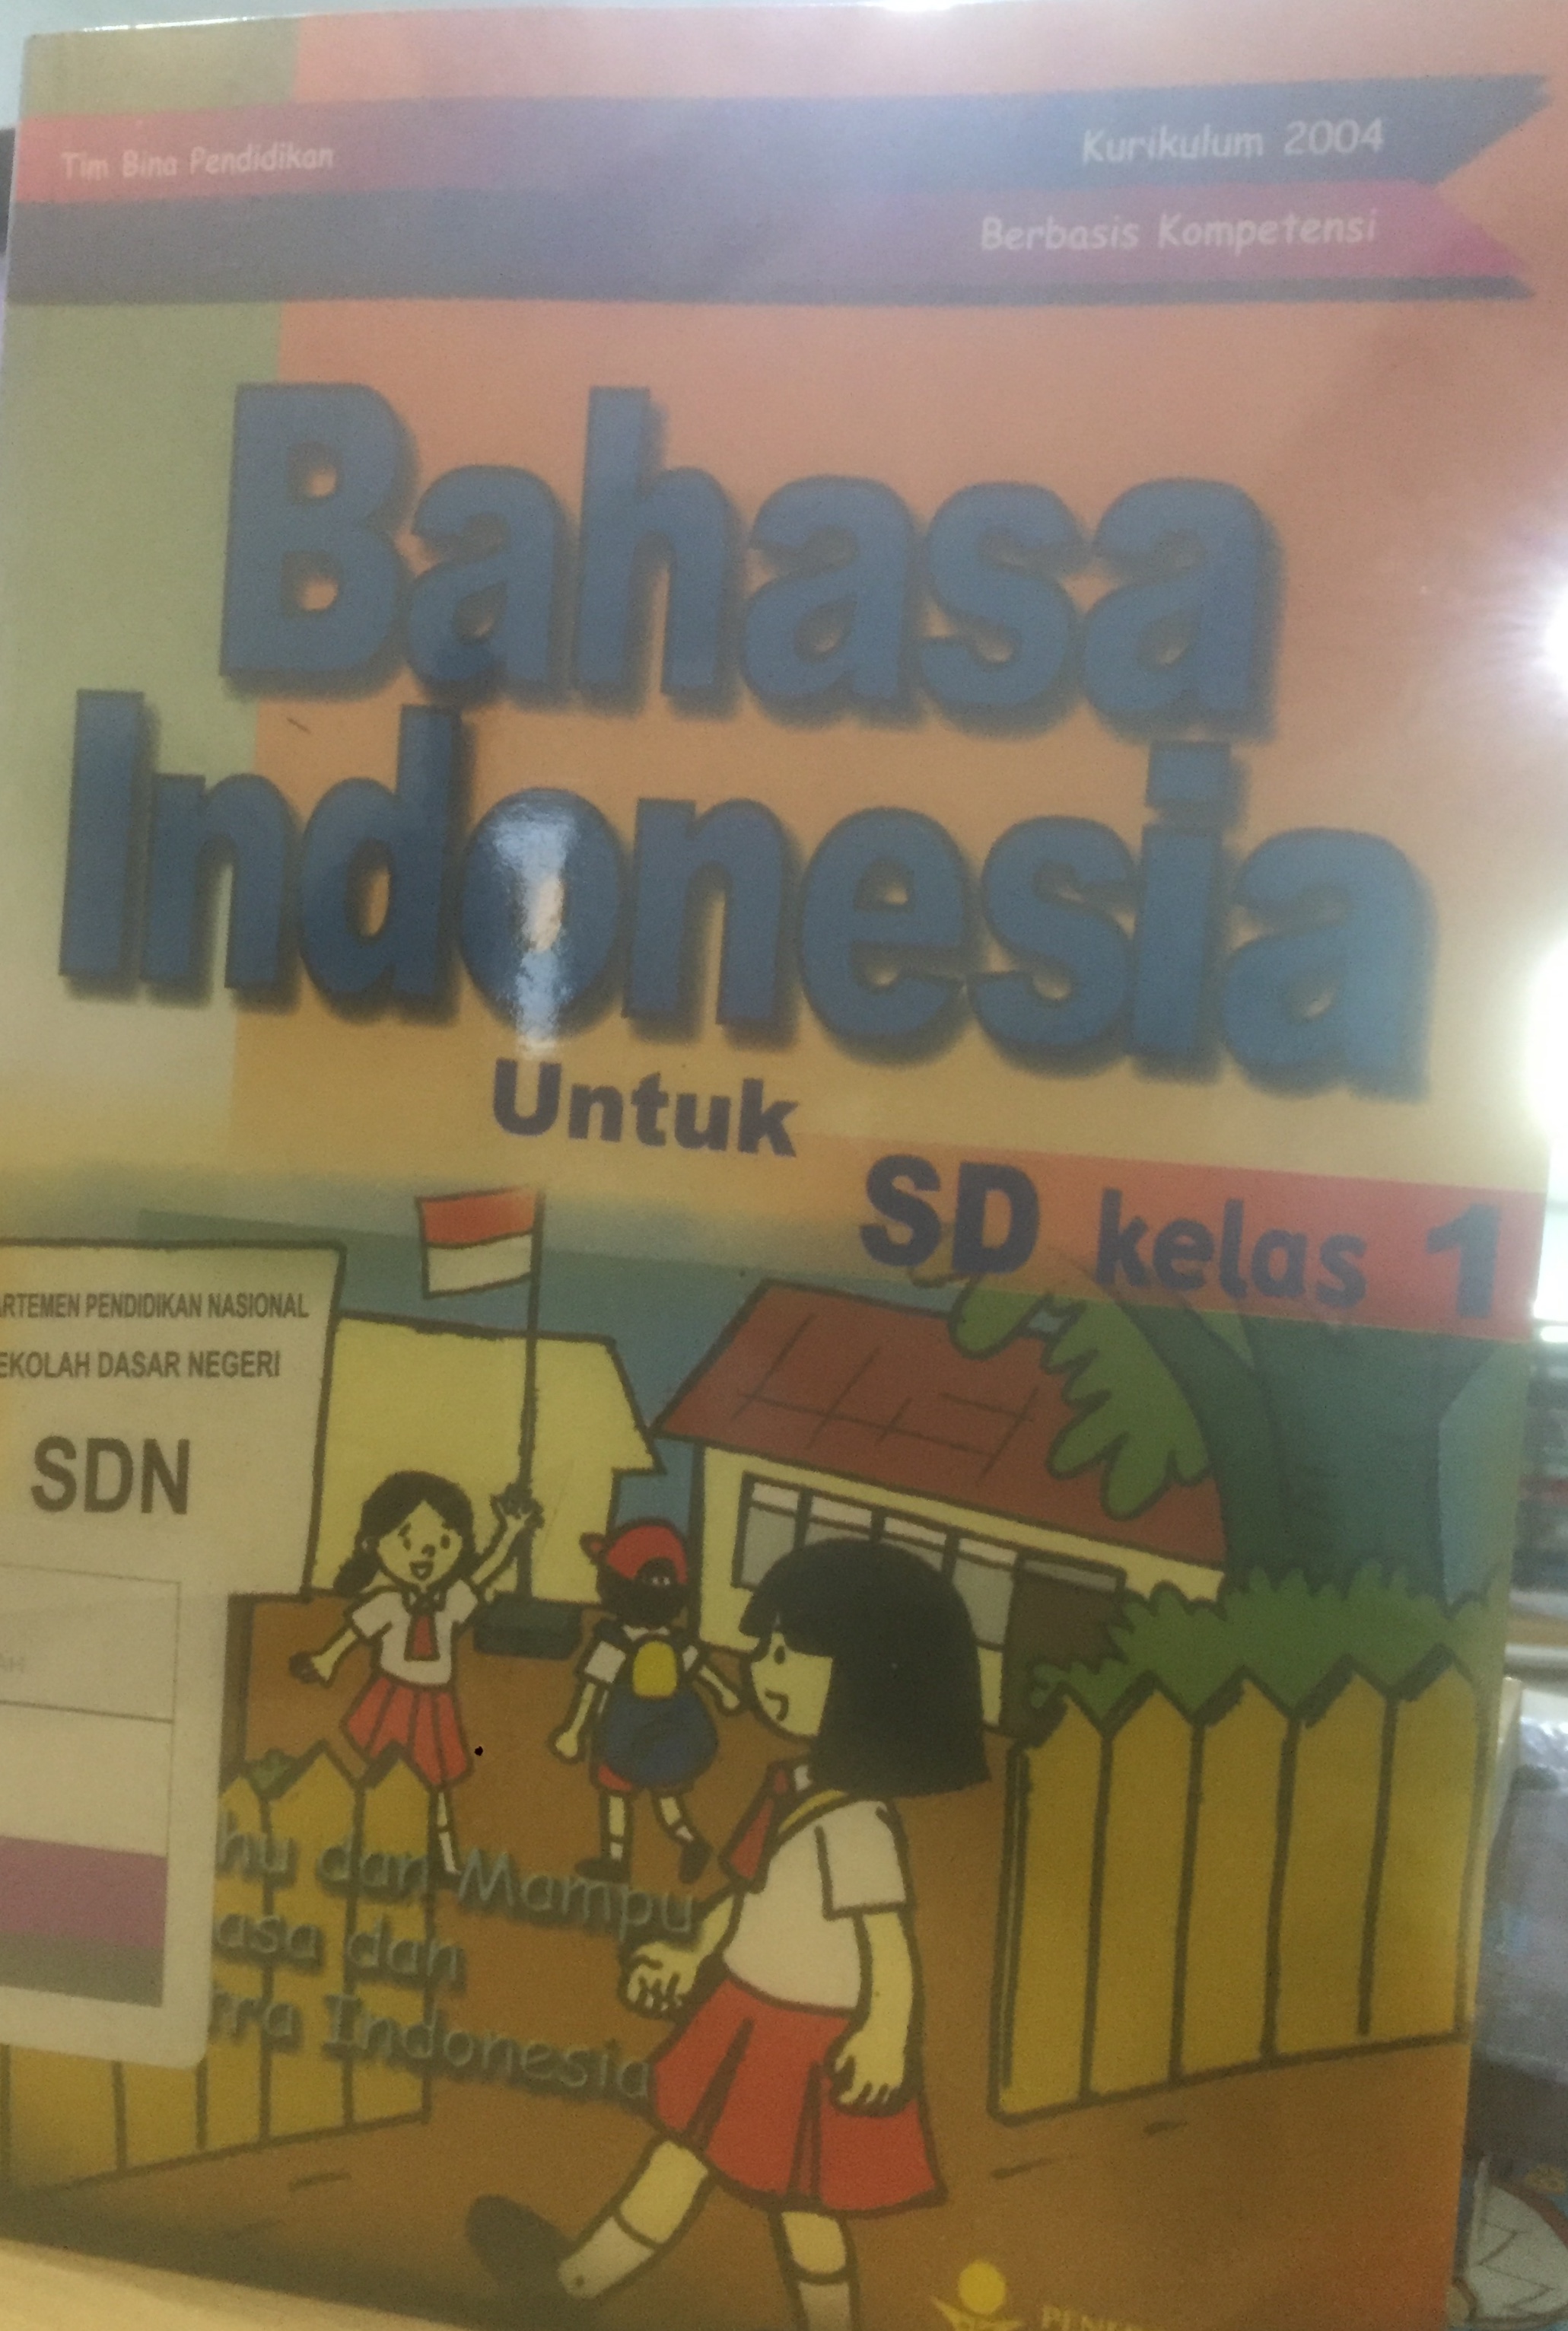 Bahasa Indonesia untuk SD kelas 1 :  Aku tahu dan mampu berbahasa dan bersastra Indonesia